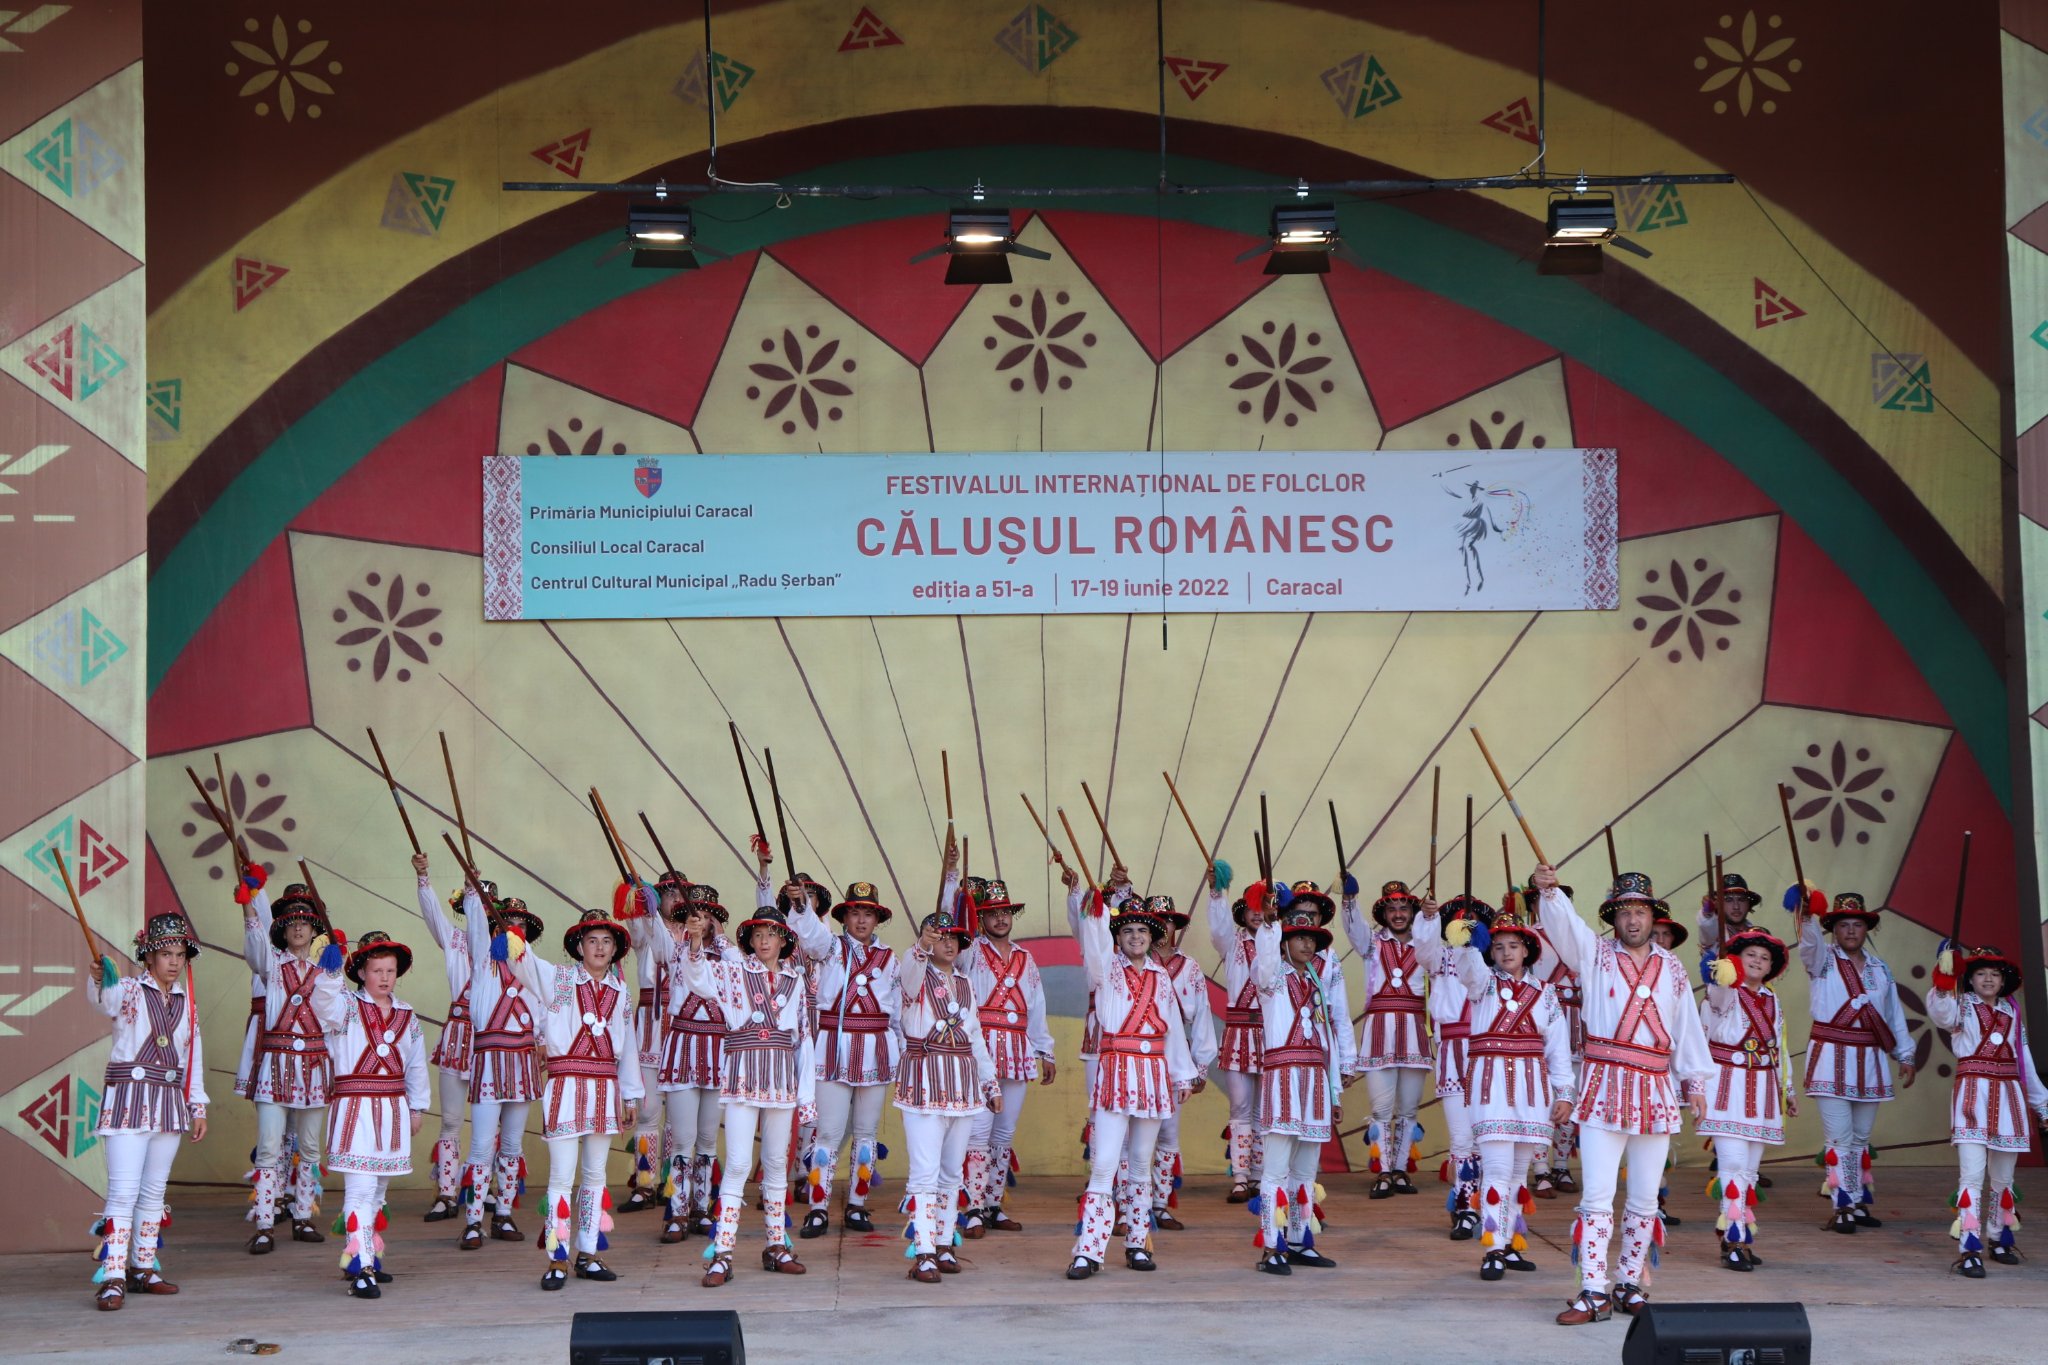 Festivalul Internațional de Folclor “CĂLUȘUL ROMÂNESC”, ediția 52-a, va debuta mâine la Caracal